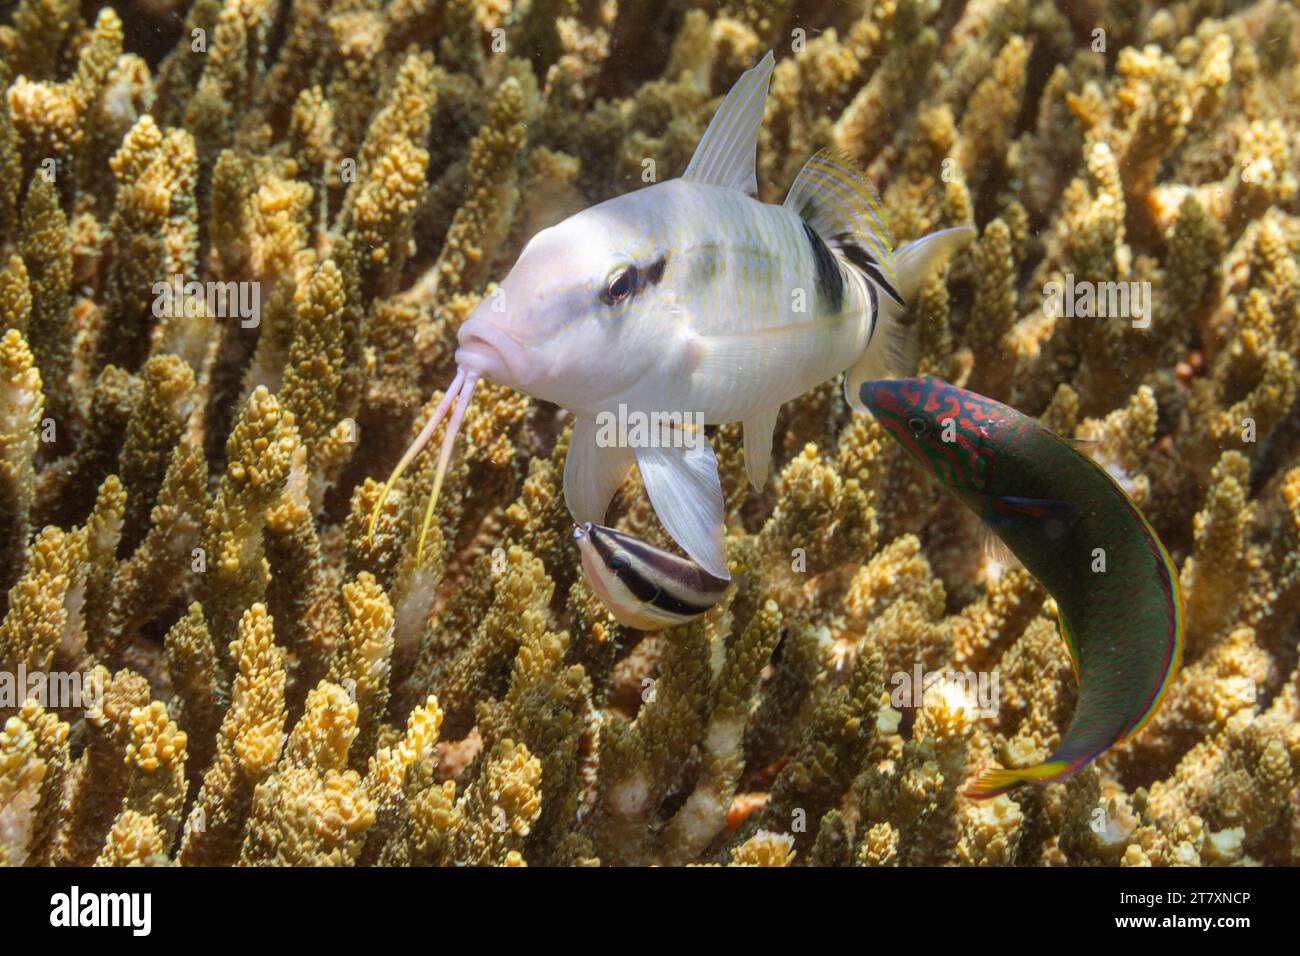 Abbondante fauna marina nelle acque cristalline al largo dell'isola di Bangka, vicino a Manado, Sulawesi, Indonesia, Sud-Est asiatico, Asia Foto Stock